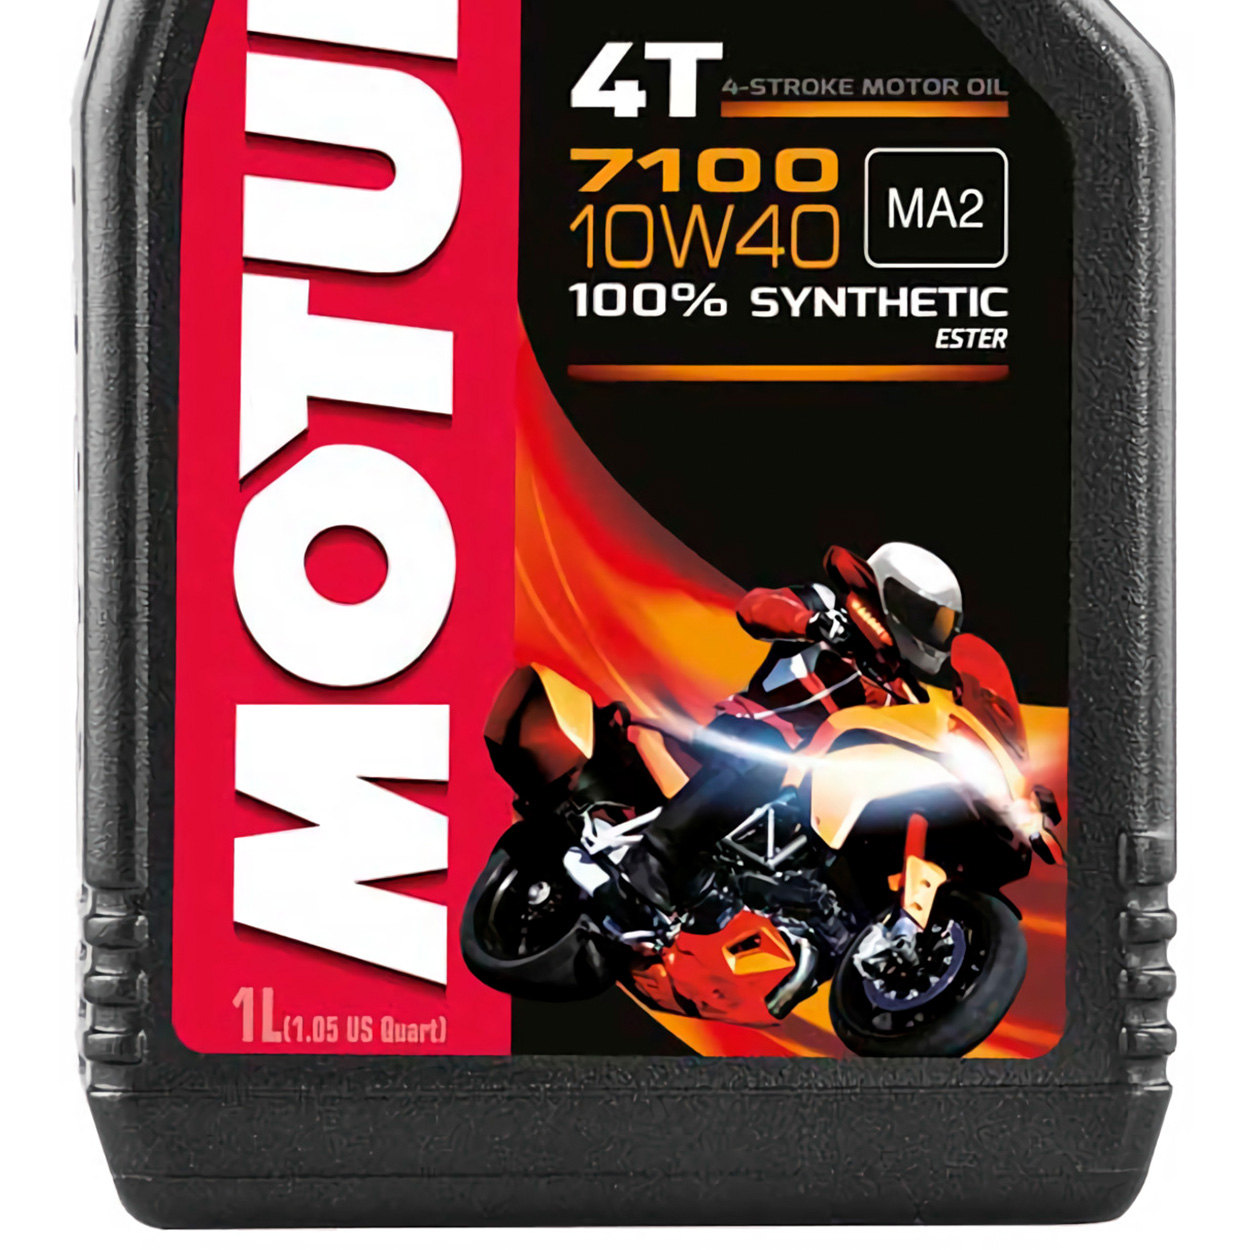 Aceite Motul Moto 4t 7100 10w40 100% Sntetico 1l